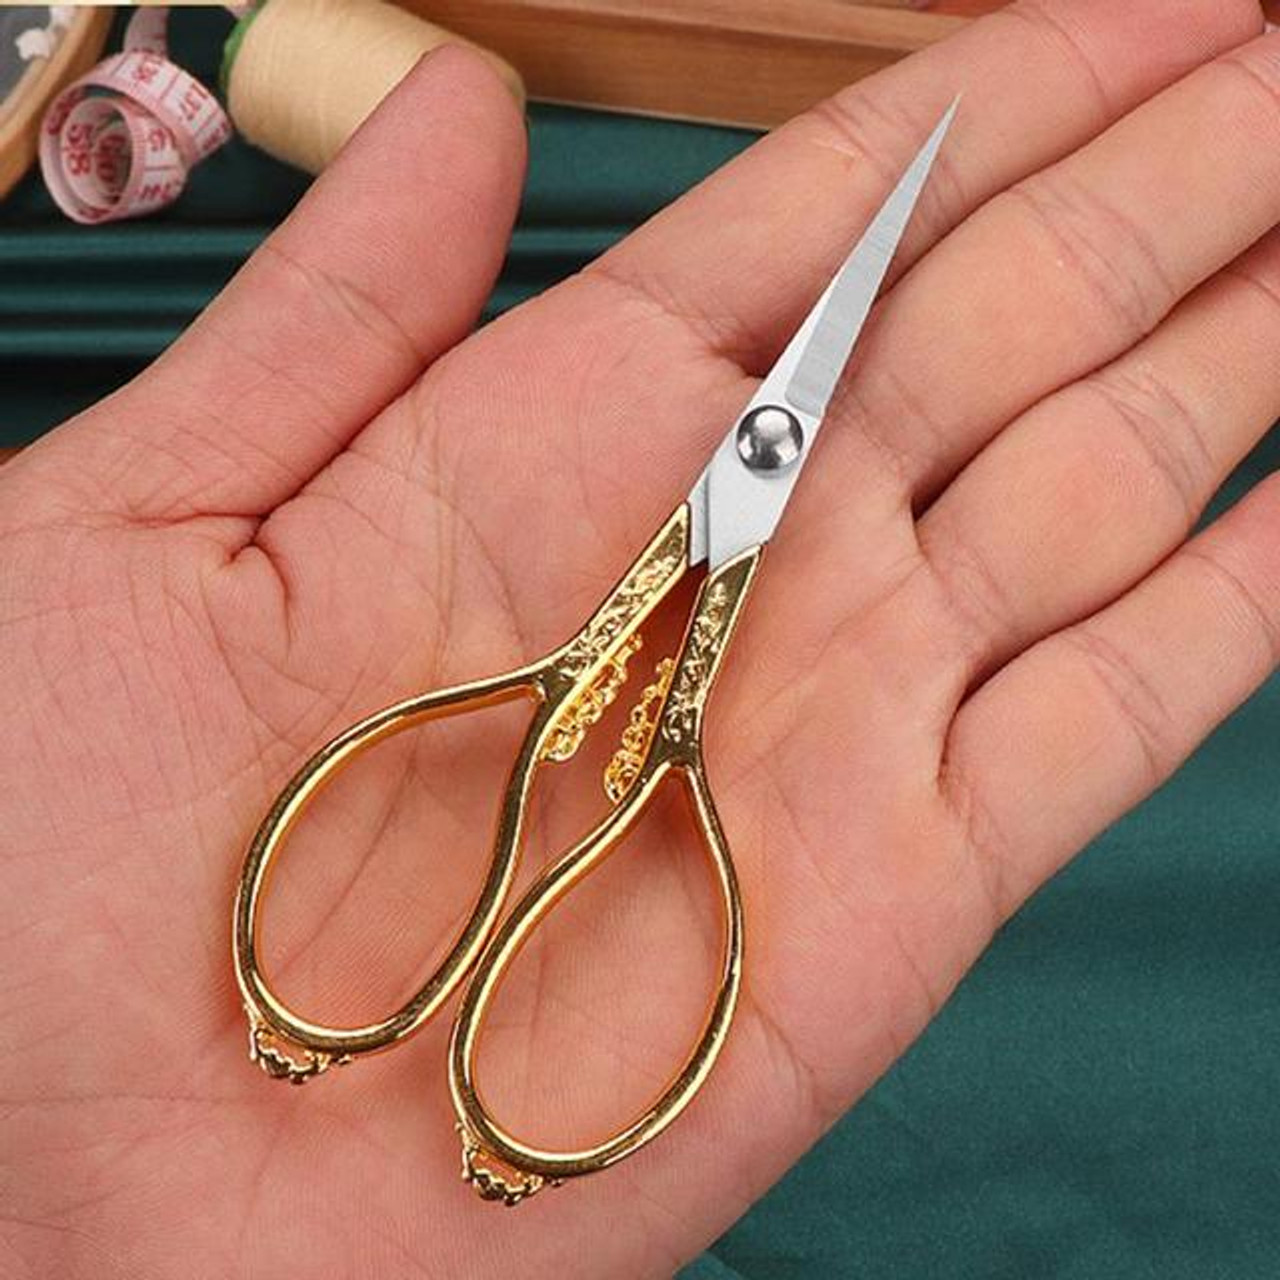 Fancy Scissors - Multi Purpose Small Gold Handle – Embroidery Design – 4  Inches